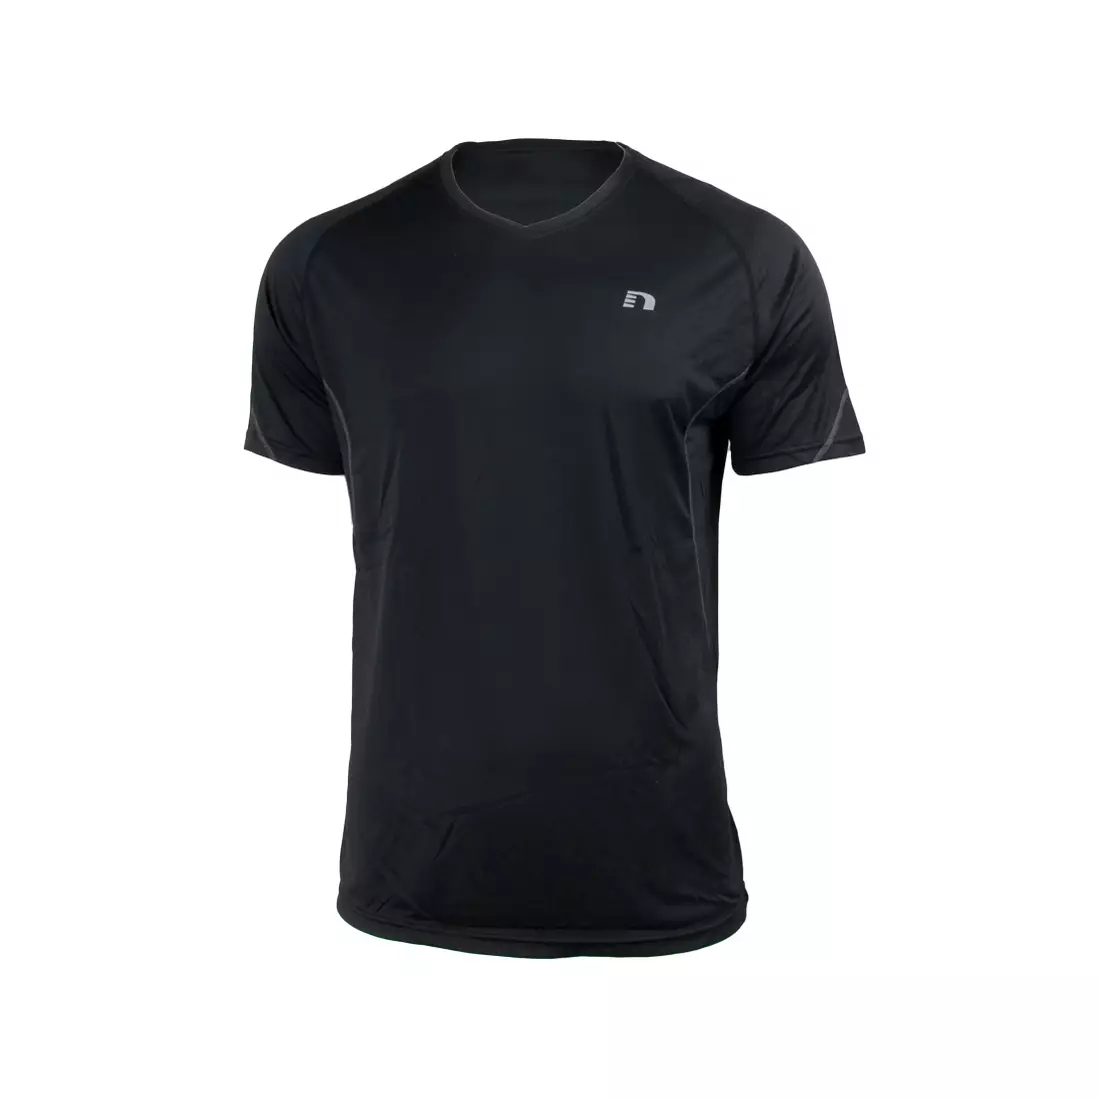 NEWLINE COOLMAX TEE - men's running T-shirt 14613-060